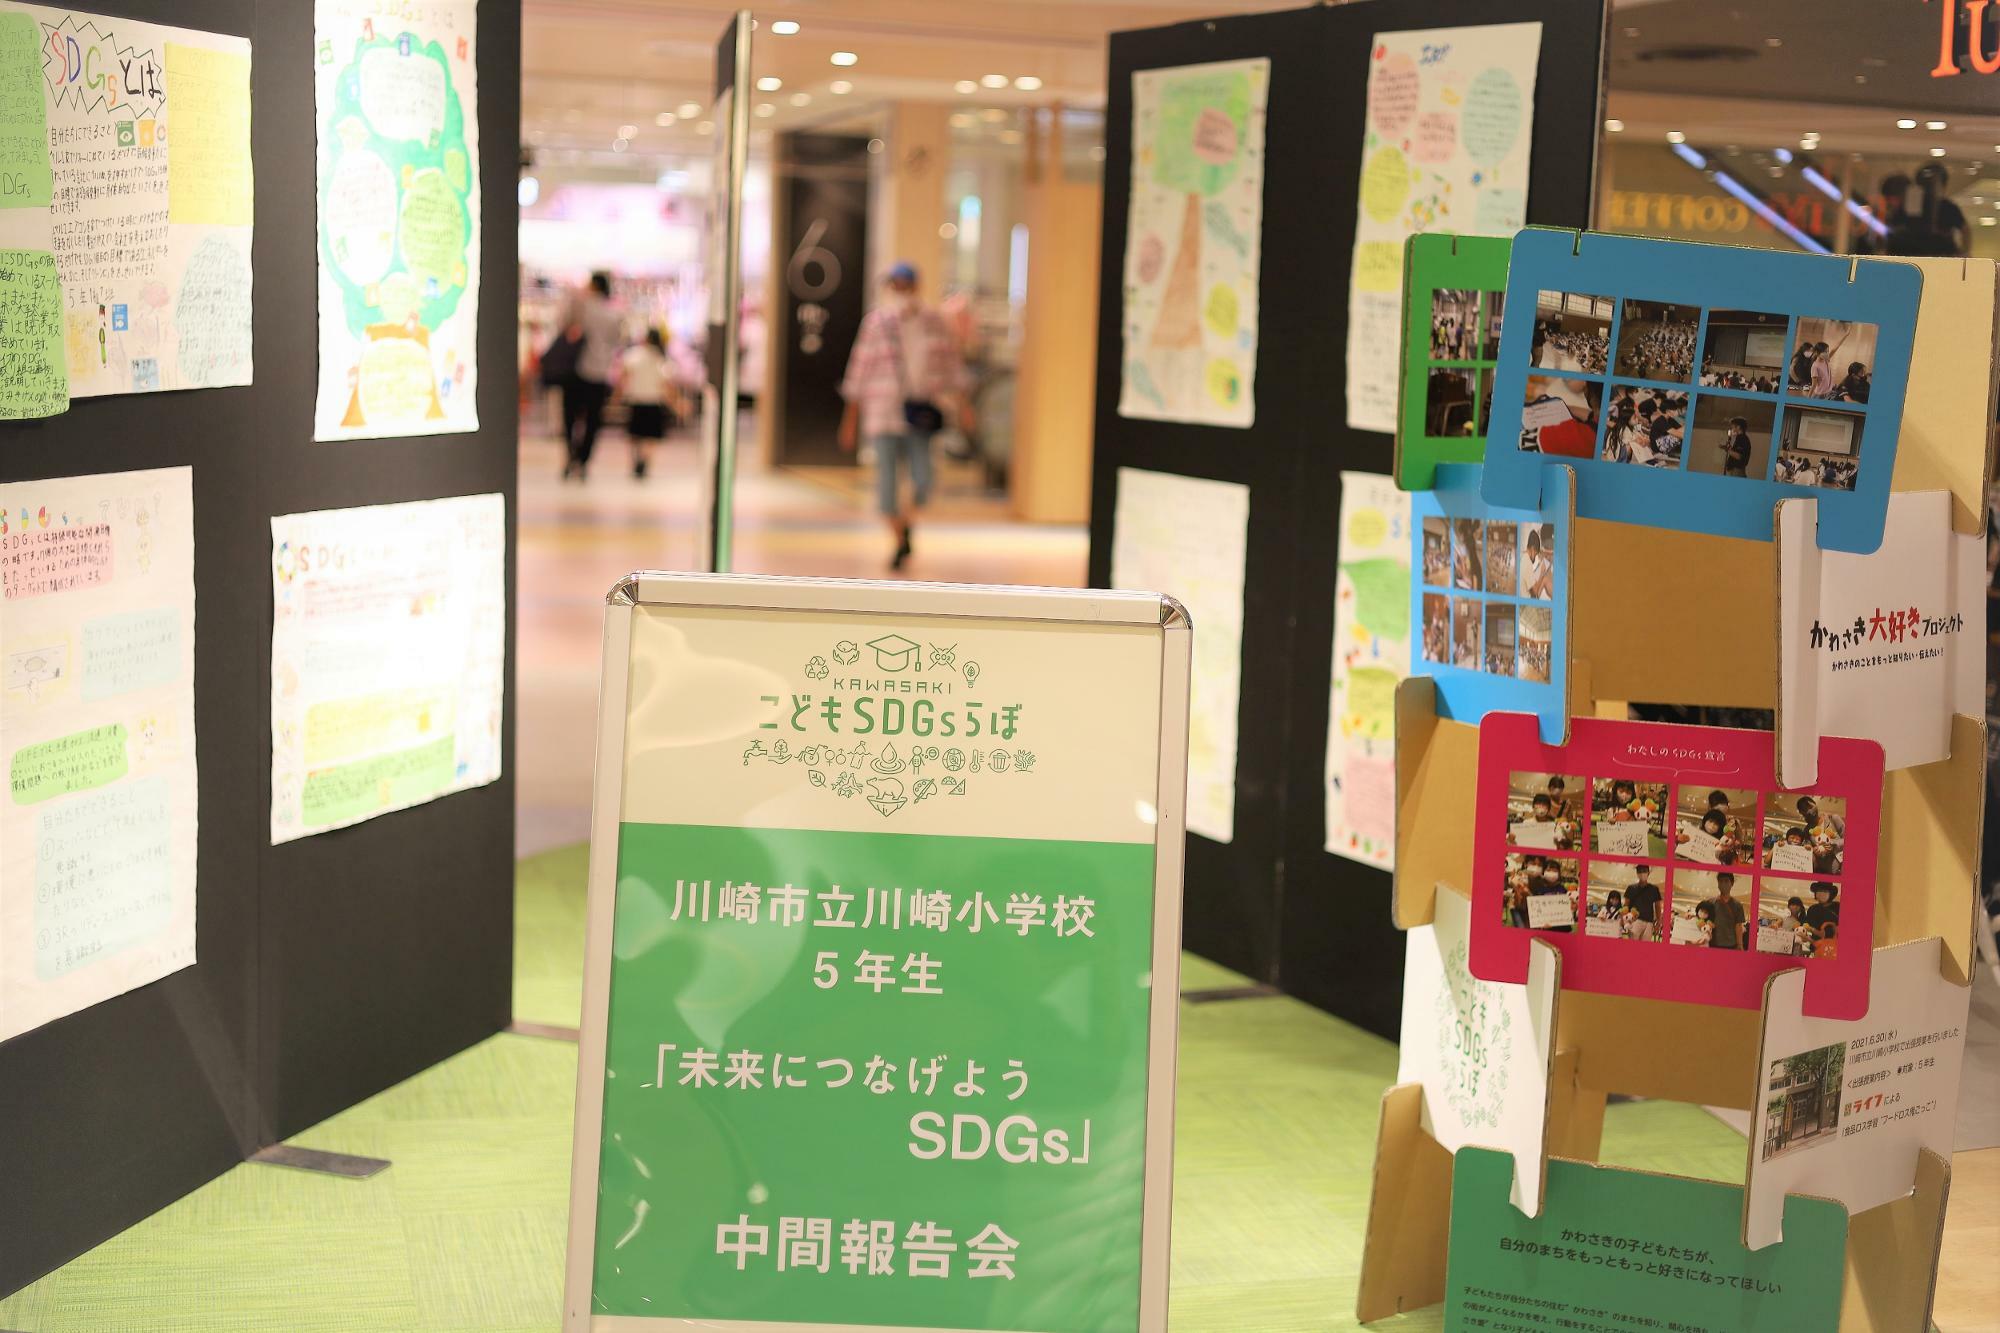 中間報告会の展示は川崎ルフロン6Fパブリックスペースにて2021年8月29日(日)まで。